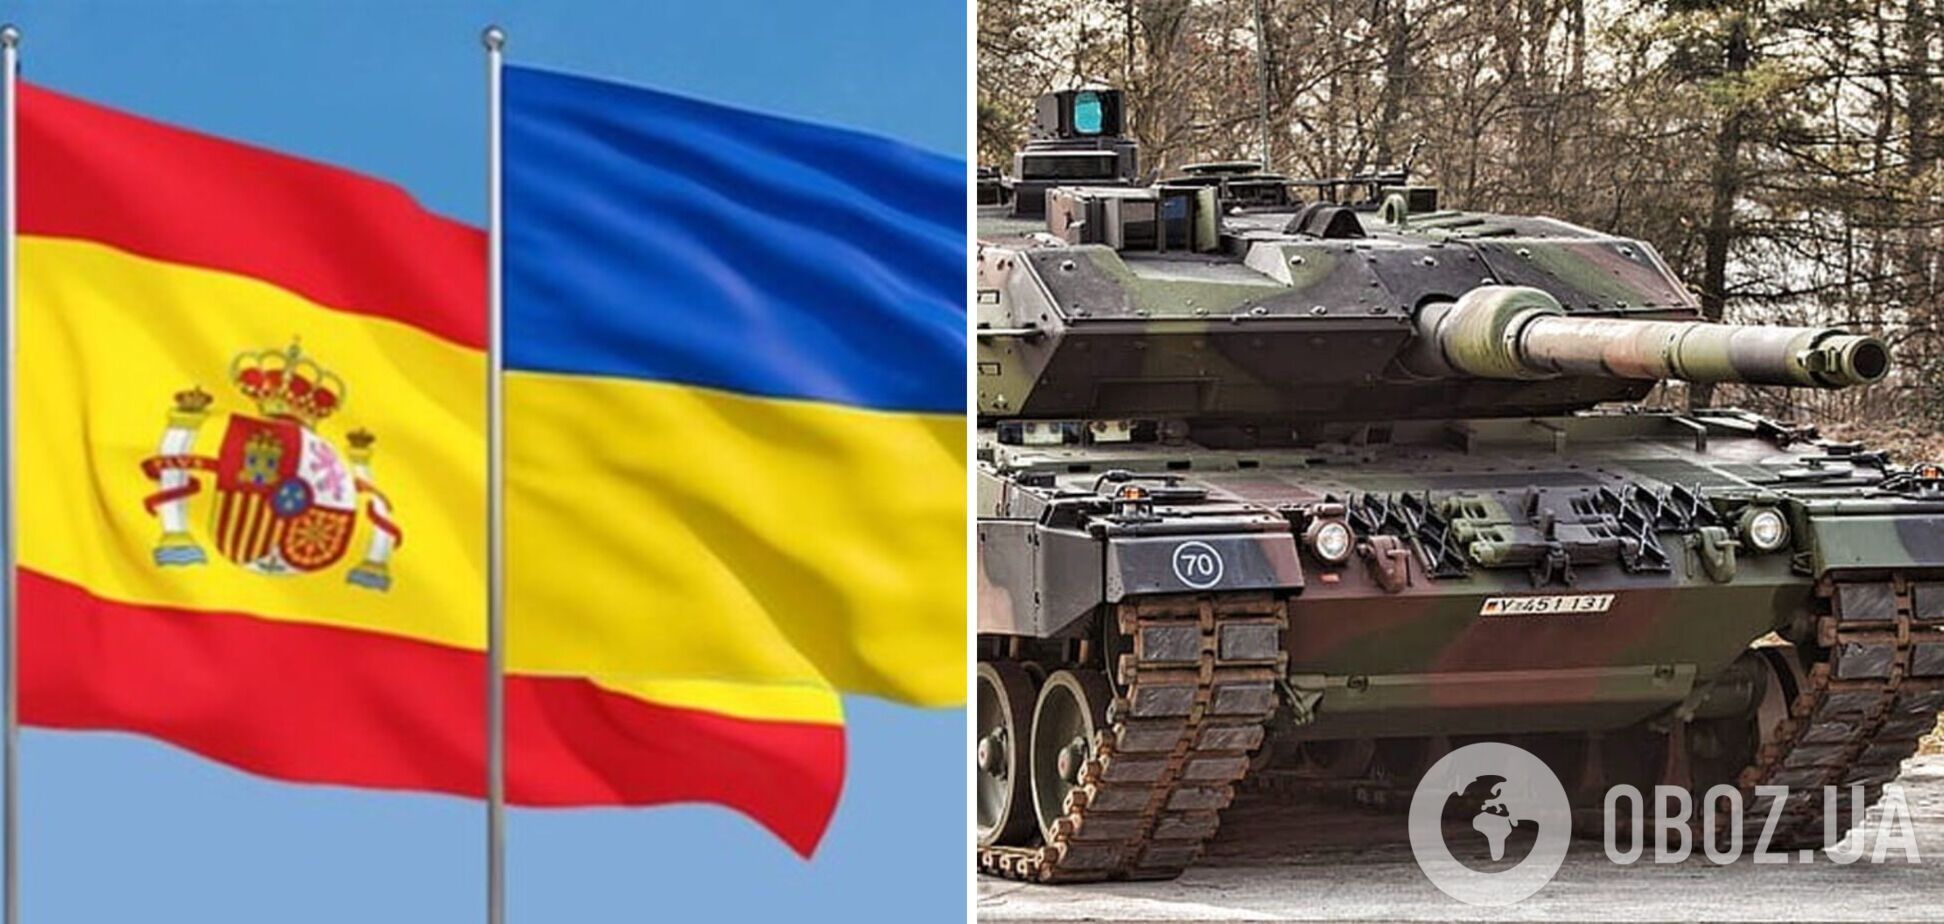 Испания выделила на подготовку танков для Украины более 4 млн евро